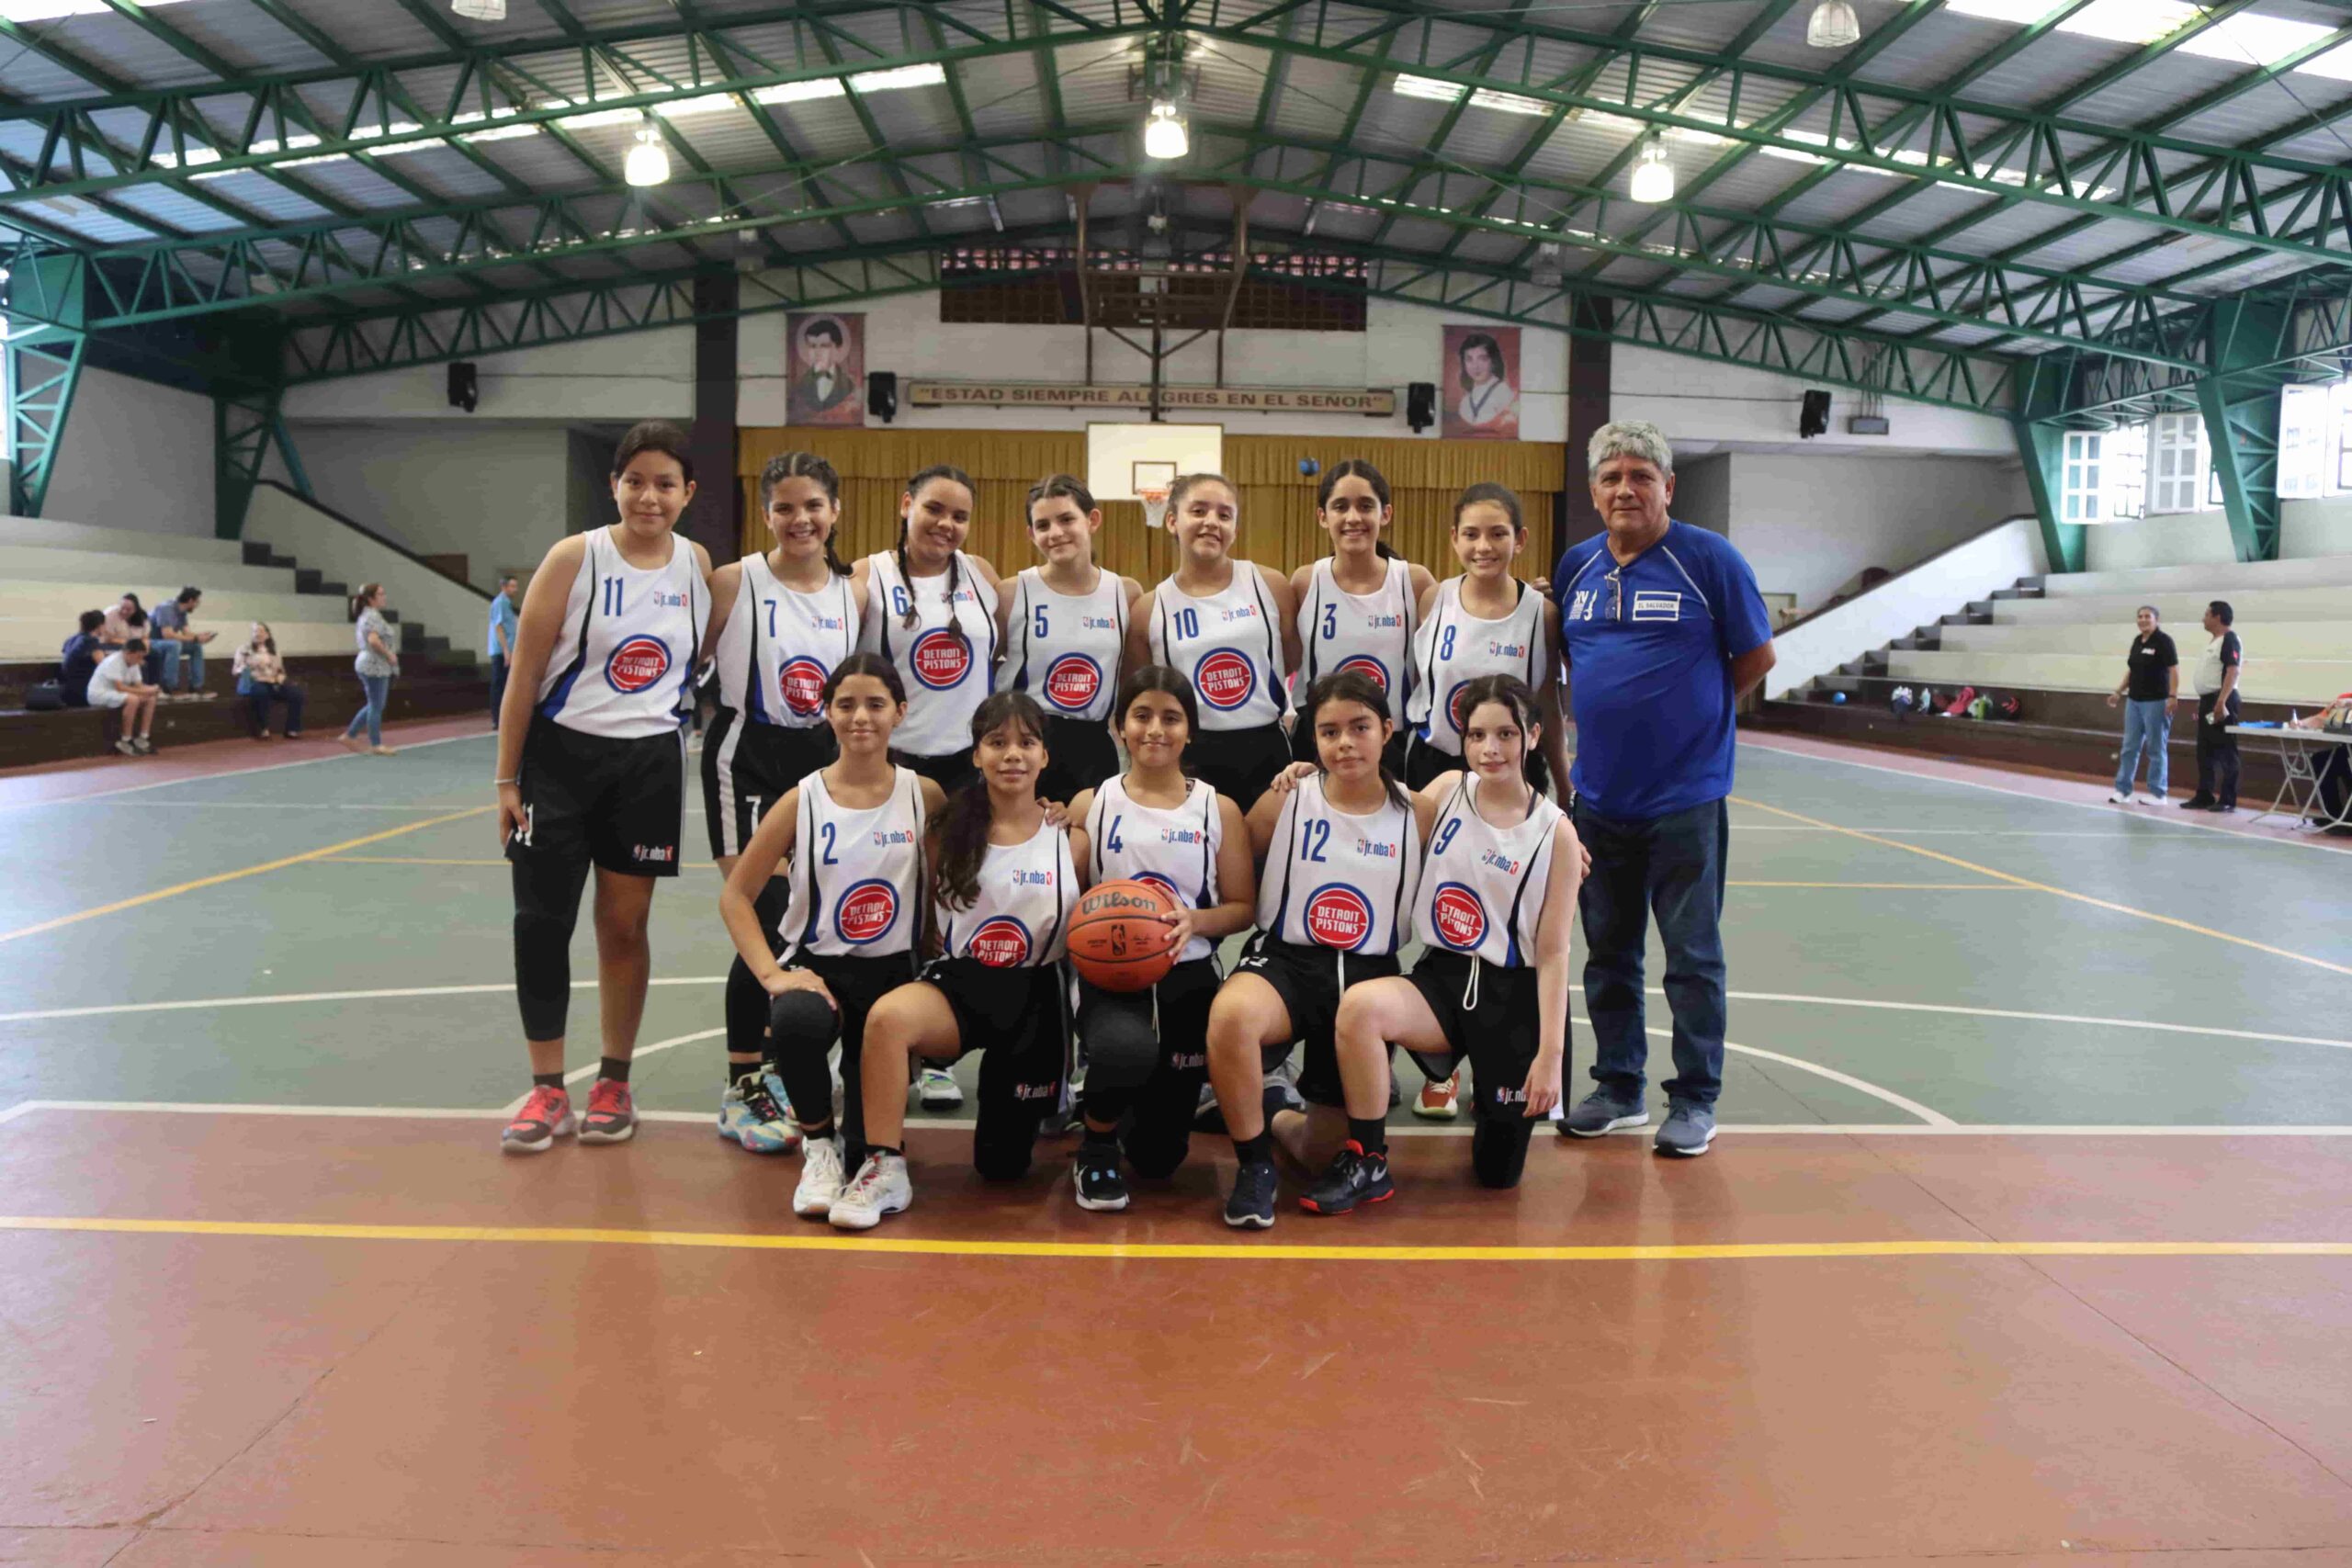 ¡Victoria para el equipo de baloncesto del Colegio Santa Inés!